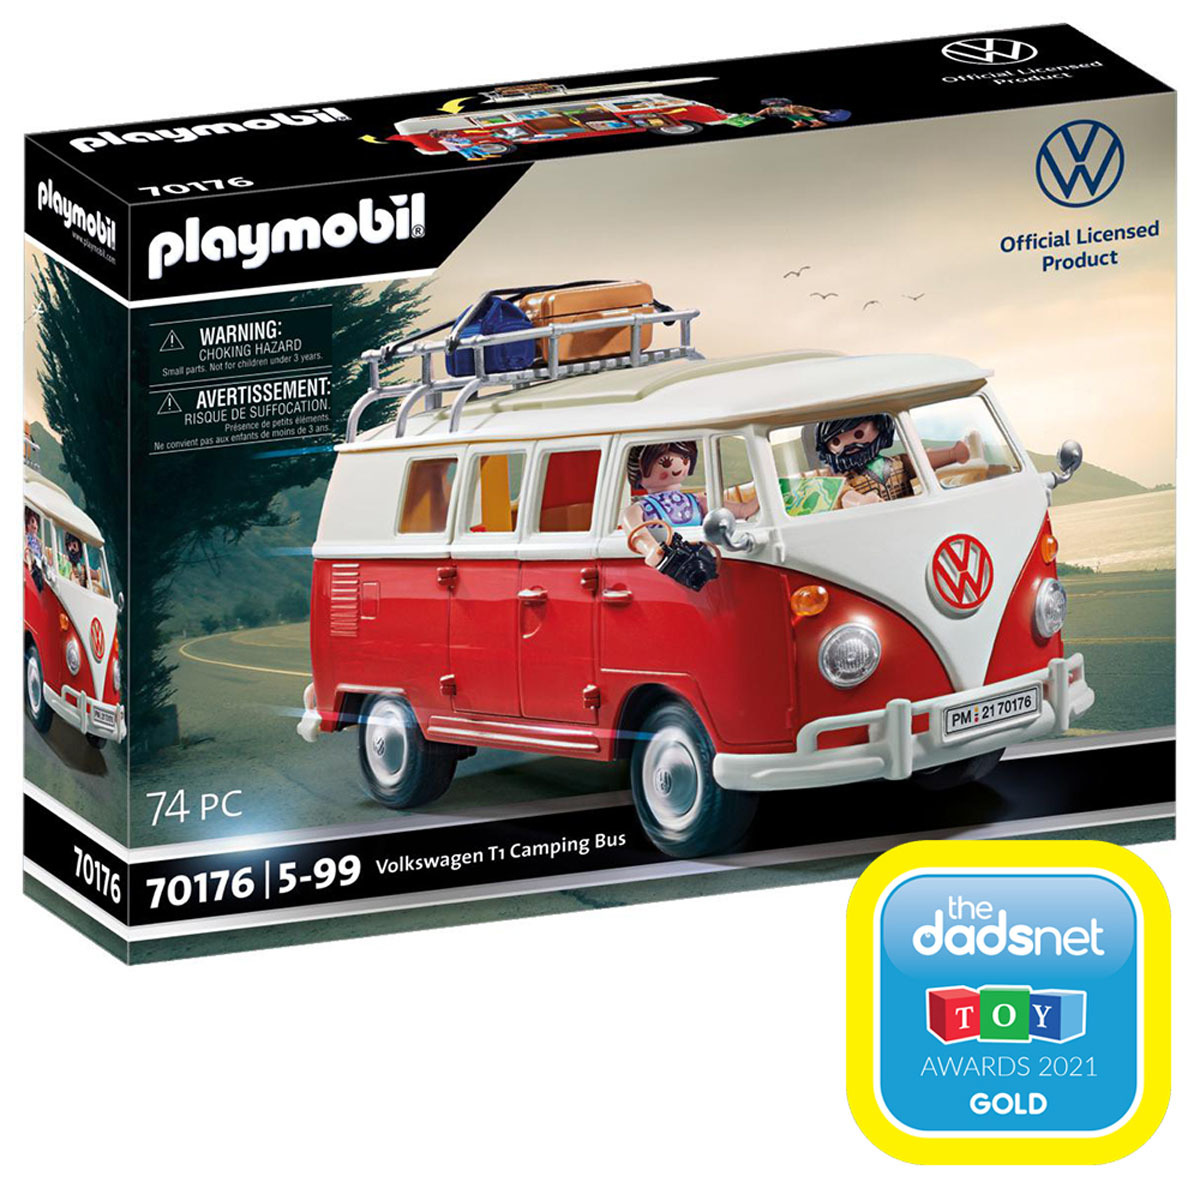  Playmobil 70176 VW Camping Bus Set